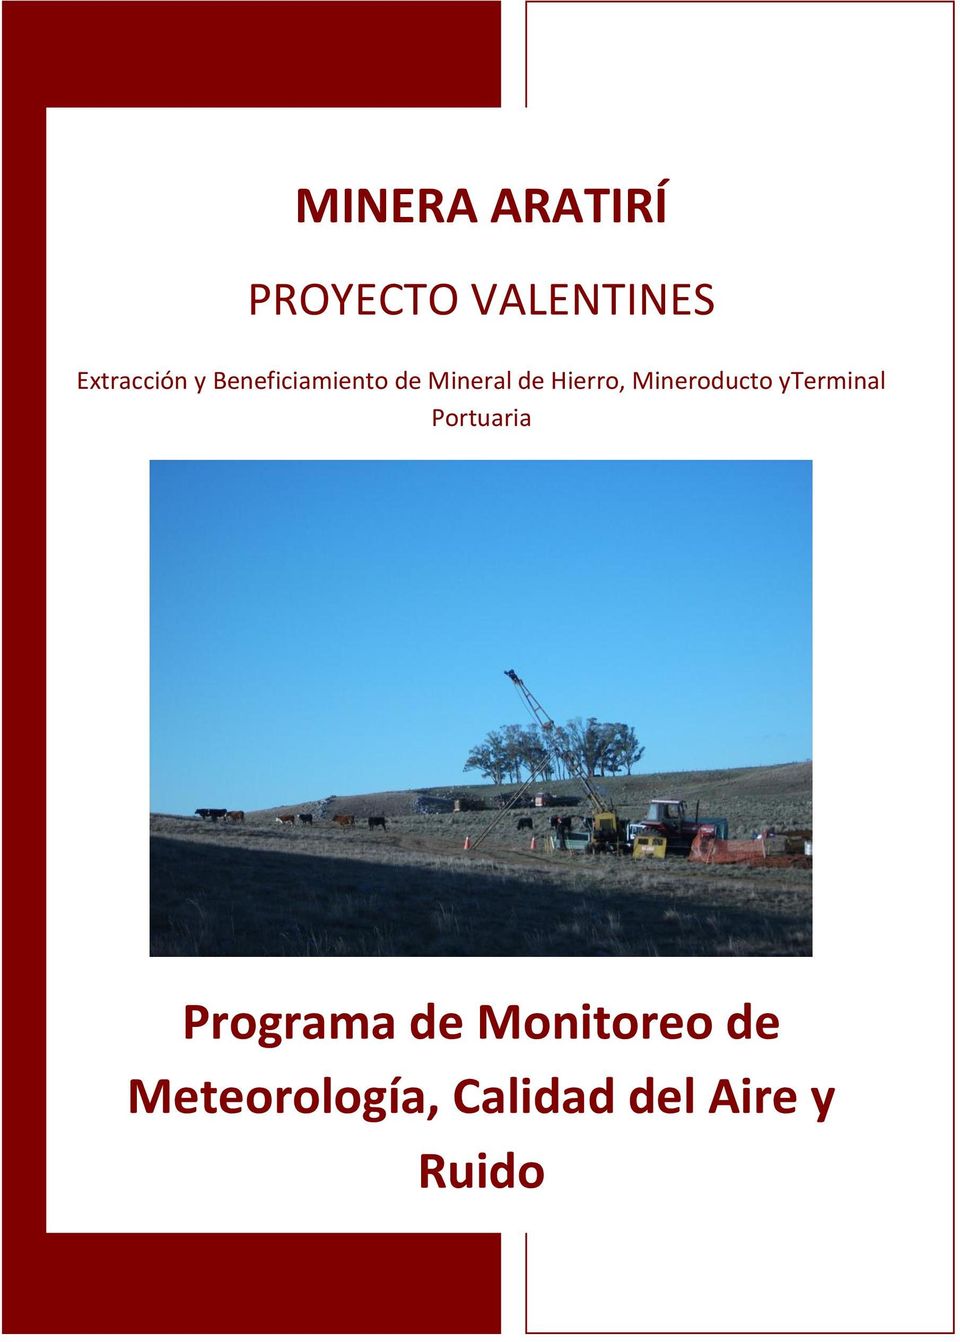 Mineroducto yterminal Portuaria Programa de